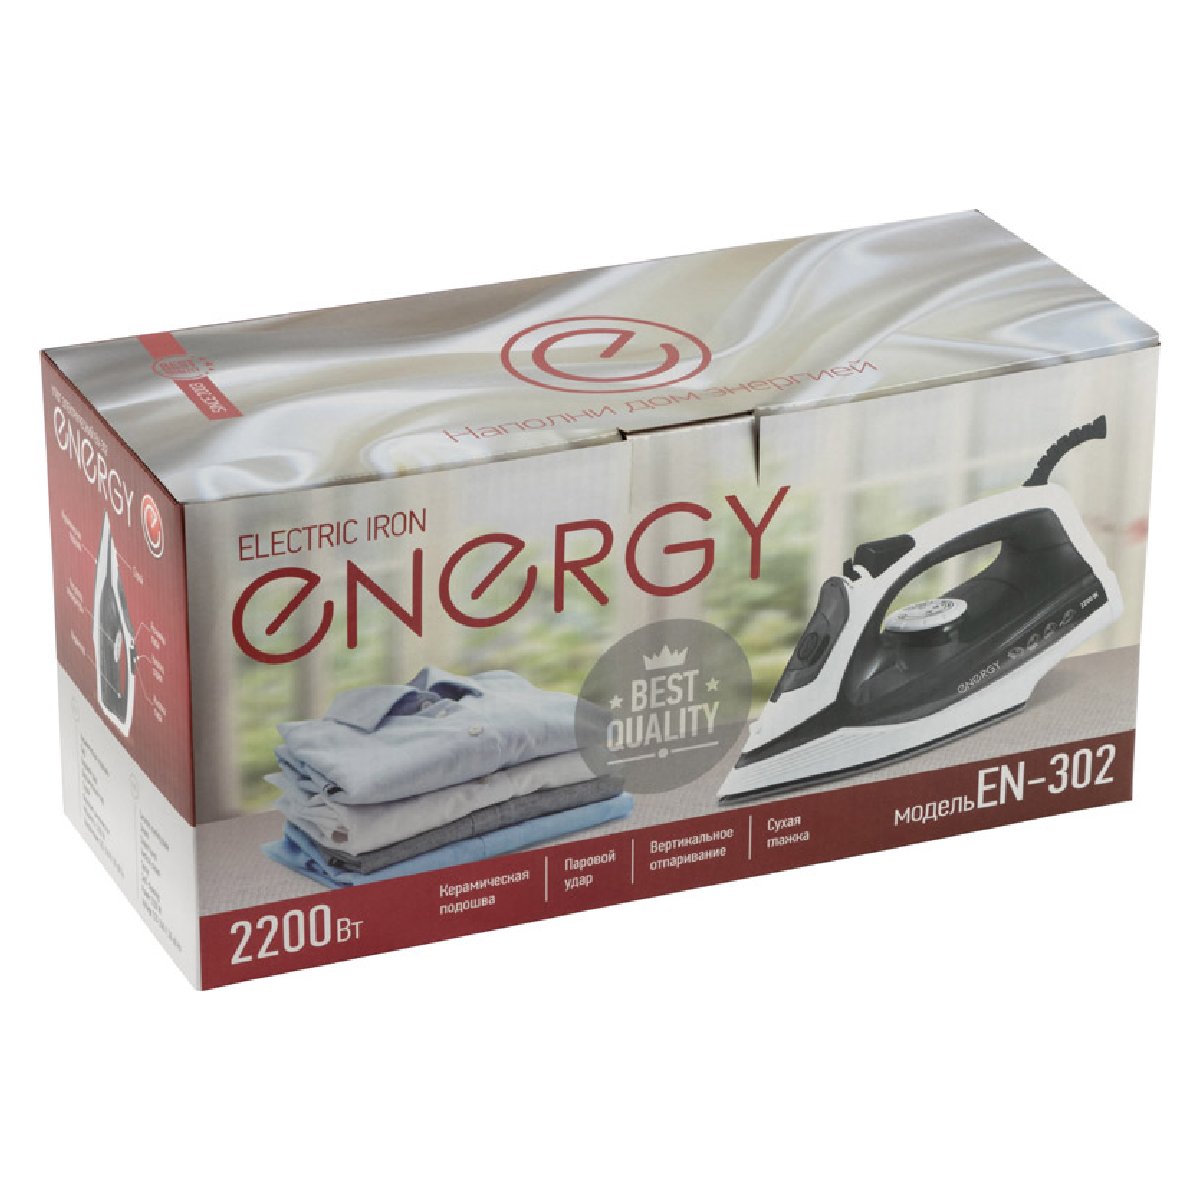 Утюг ENERGY EN-302 (2200Вт) (270073)